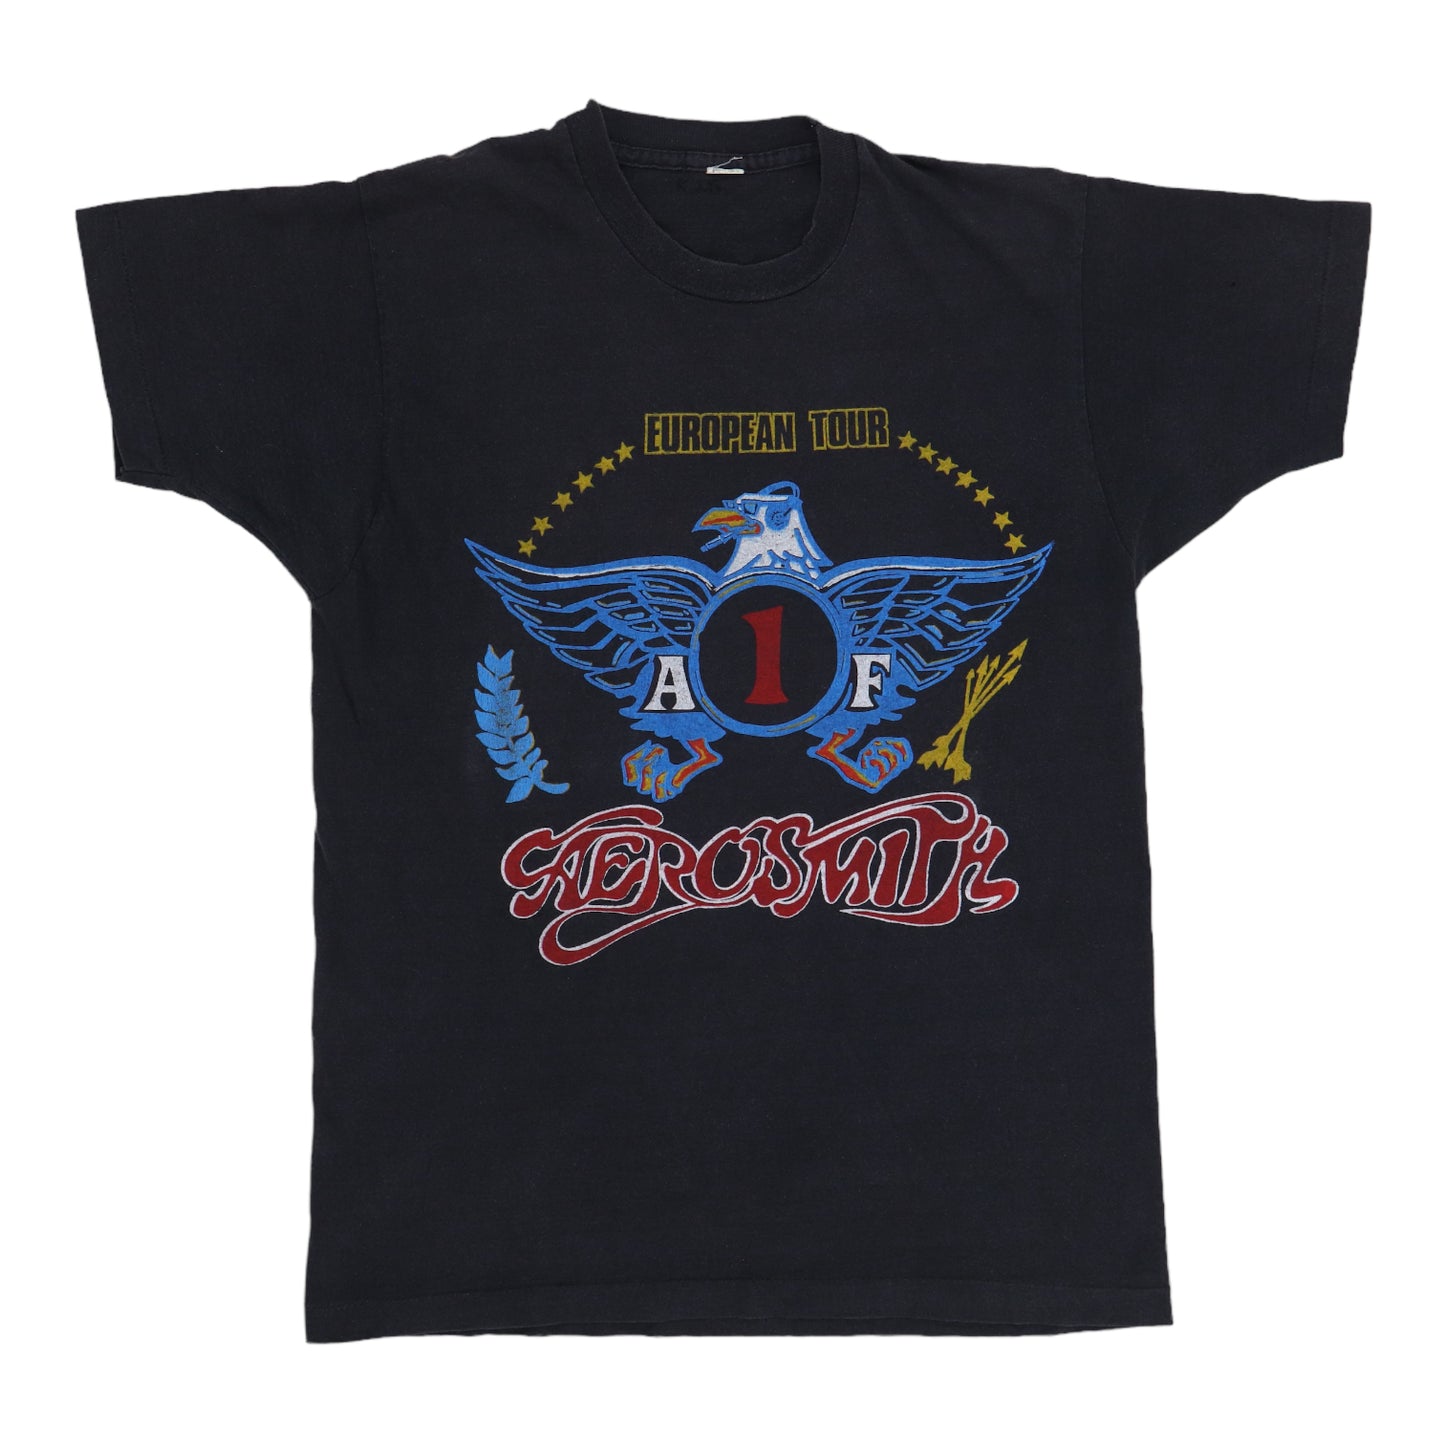 1989 Aerosmith European Tour Shirt